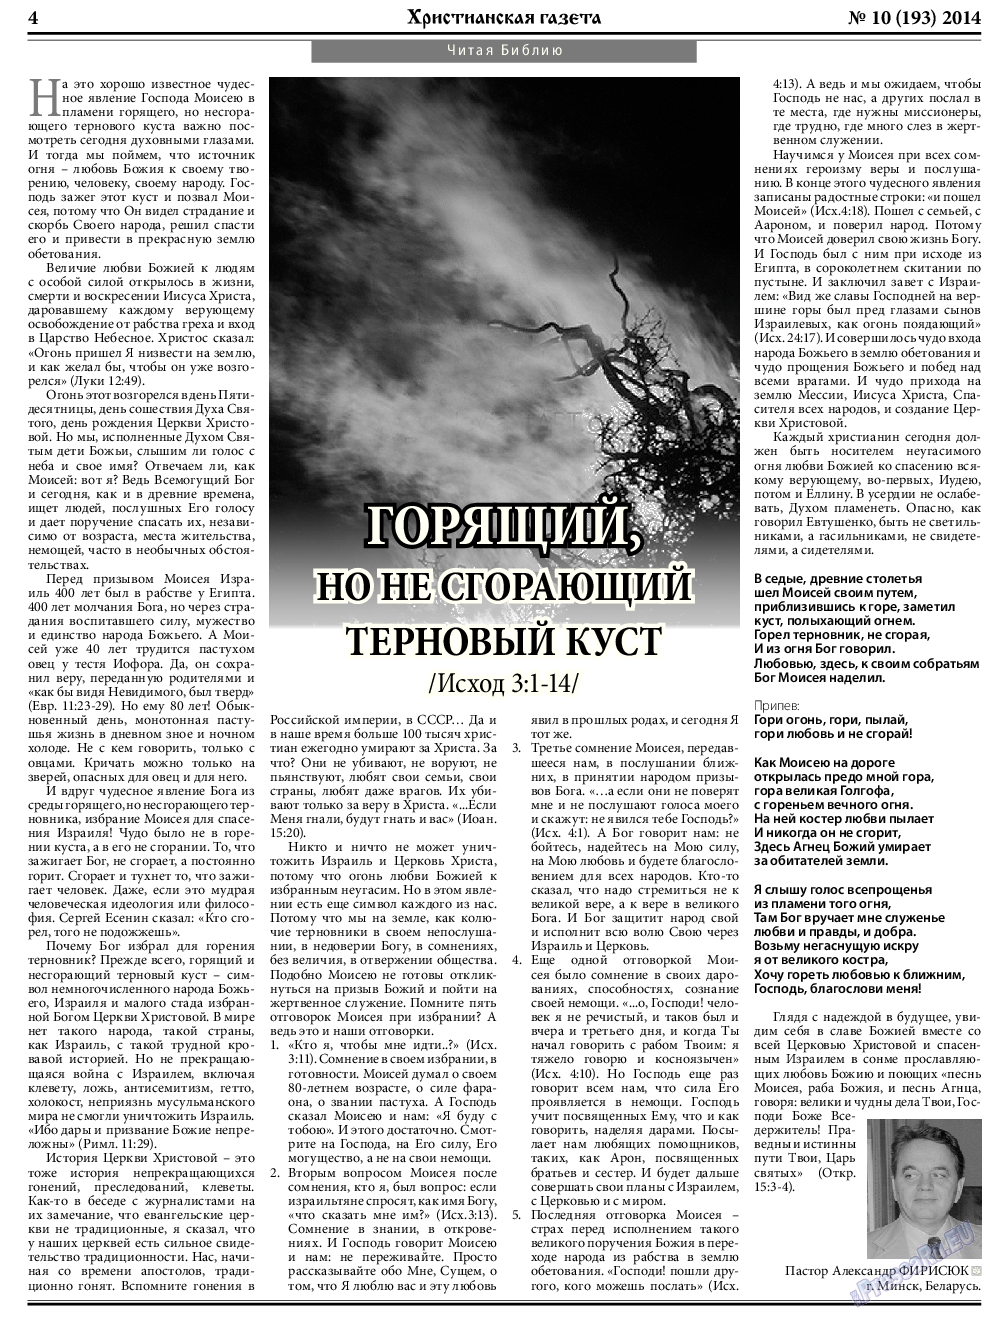 Христианская газета, газета. 2014 №10 стр.4